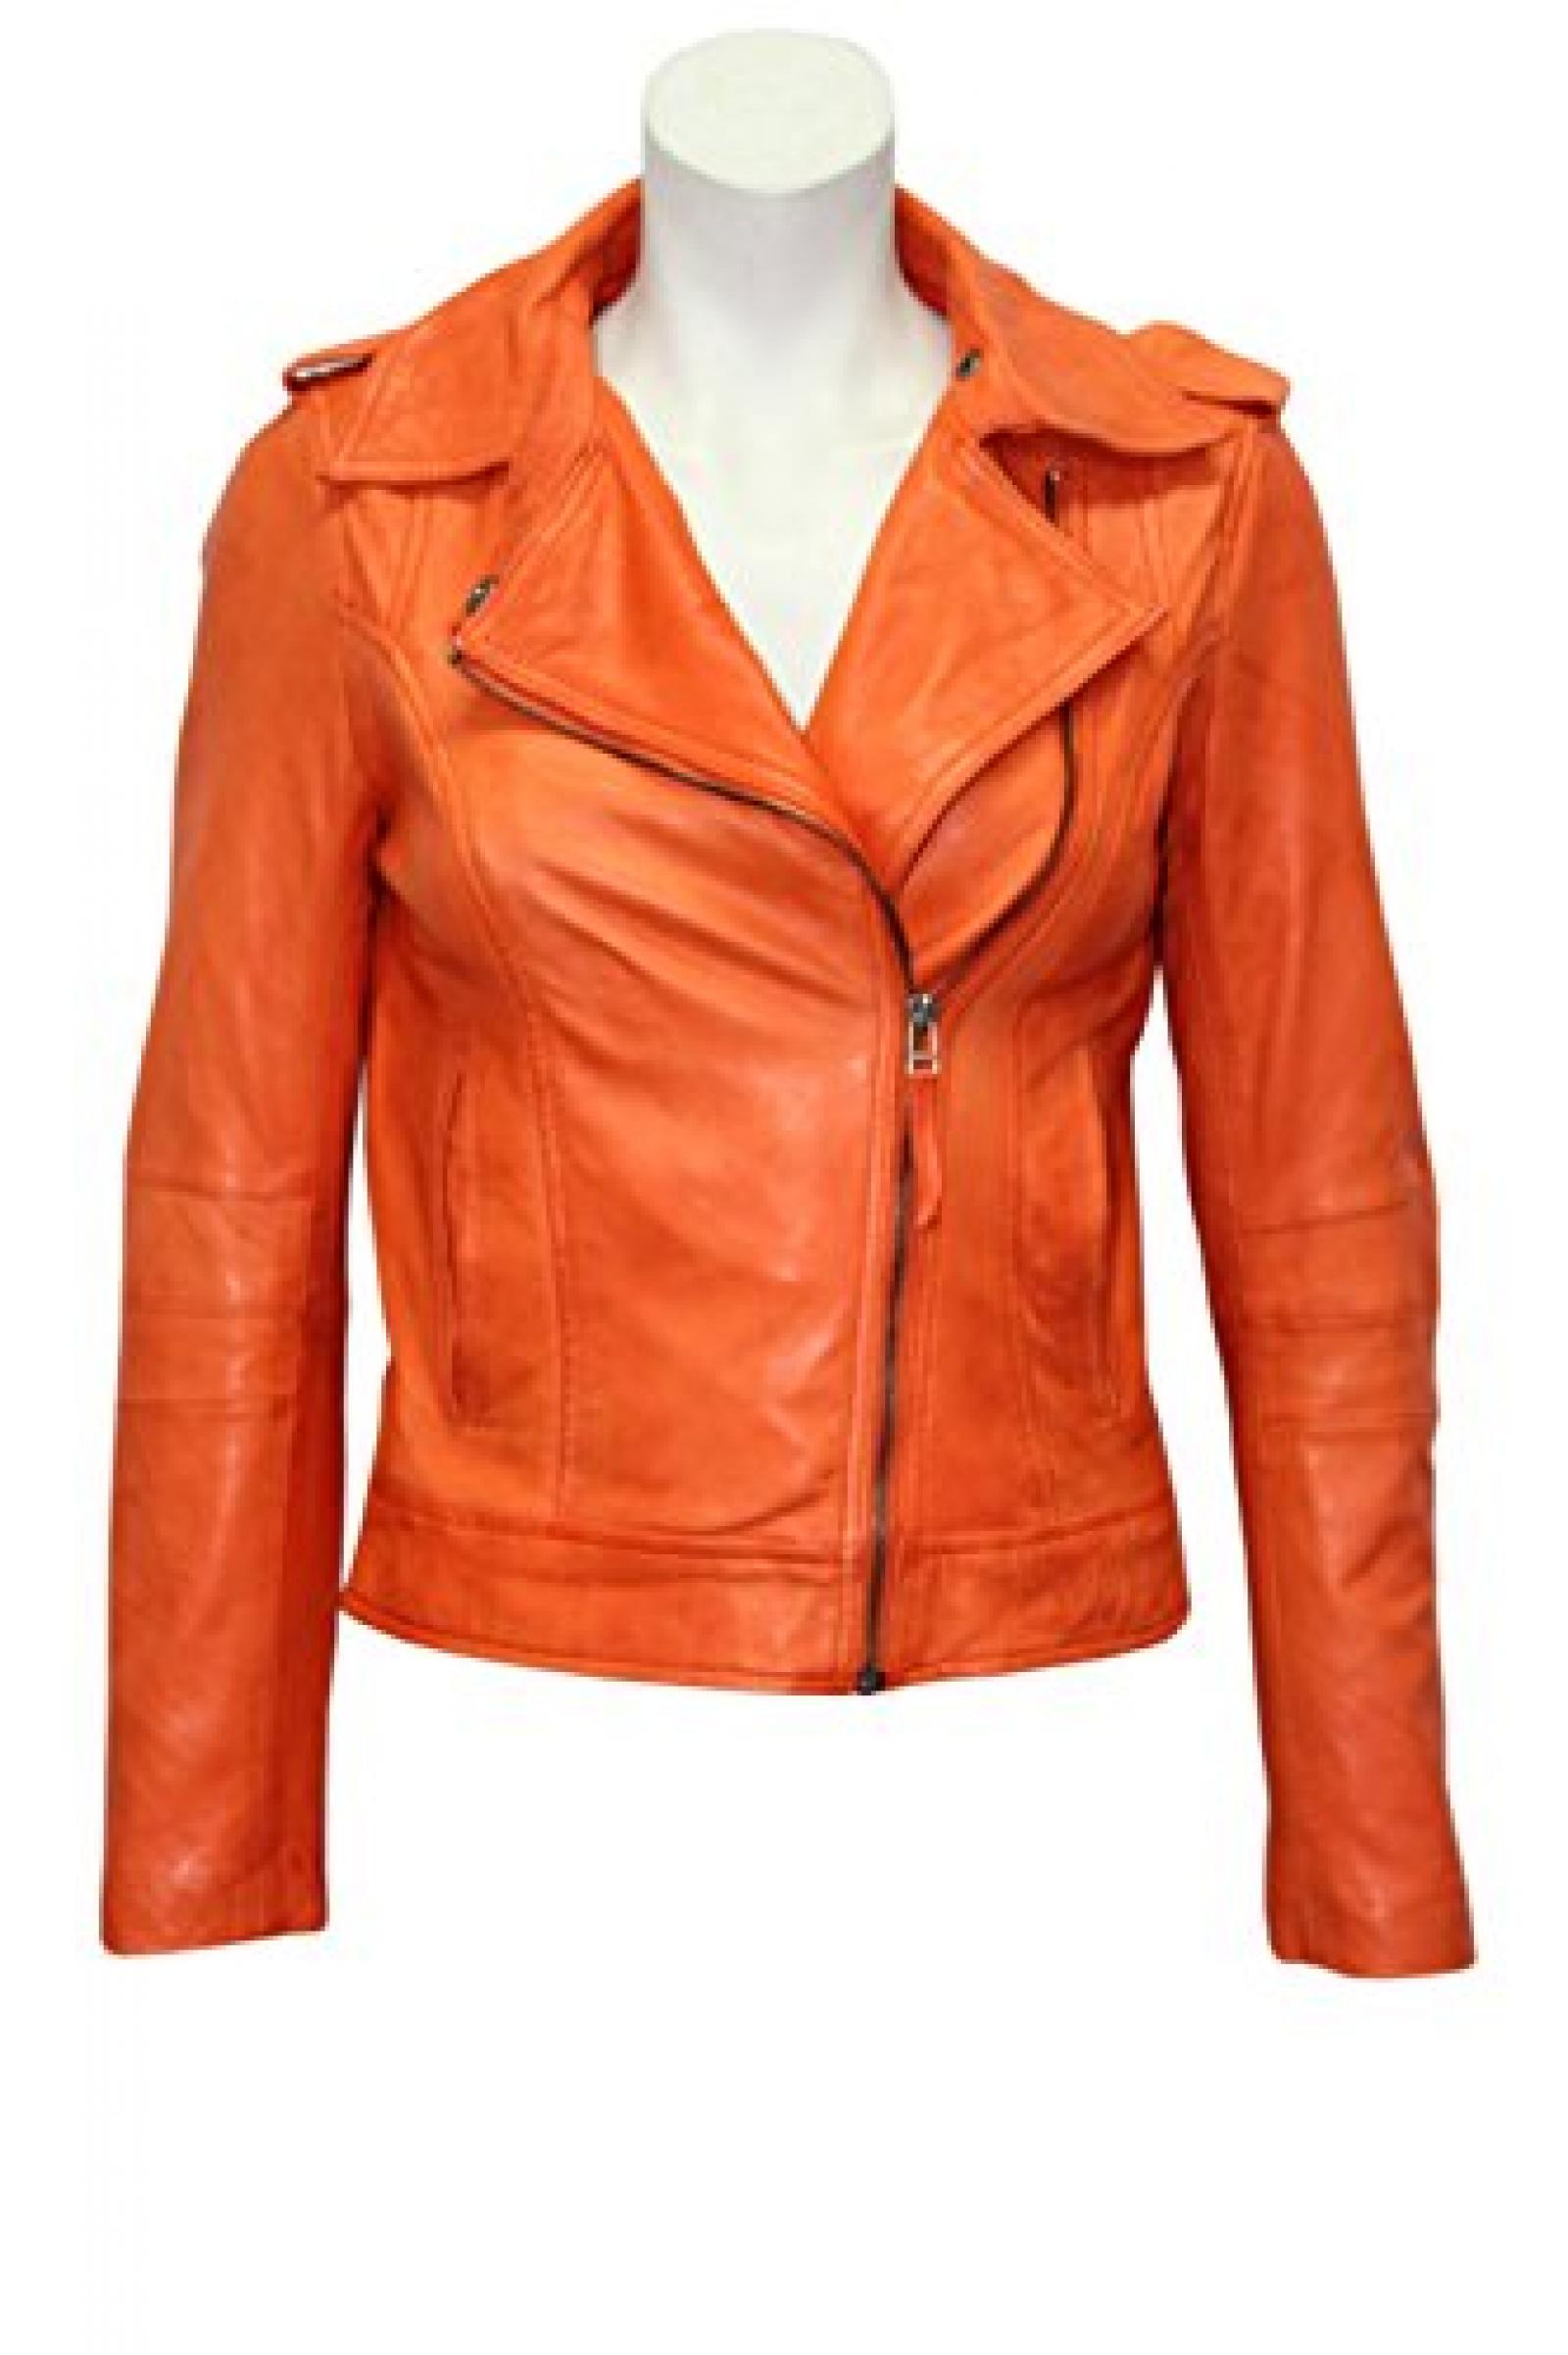 Damen Modell BRANDO 442 neu orange Fashion Biker-Stil aus weichem Leder Rock- Jacke 